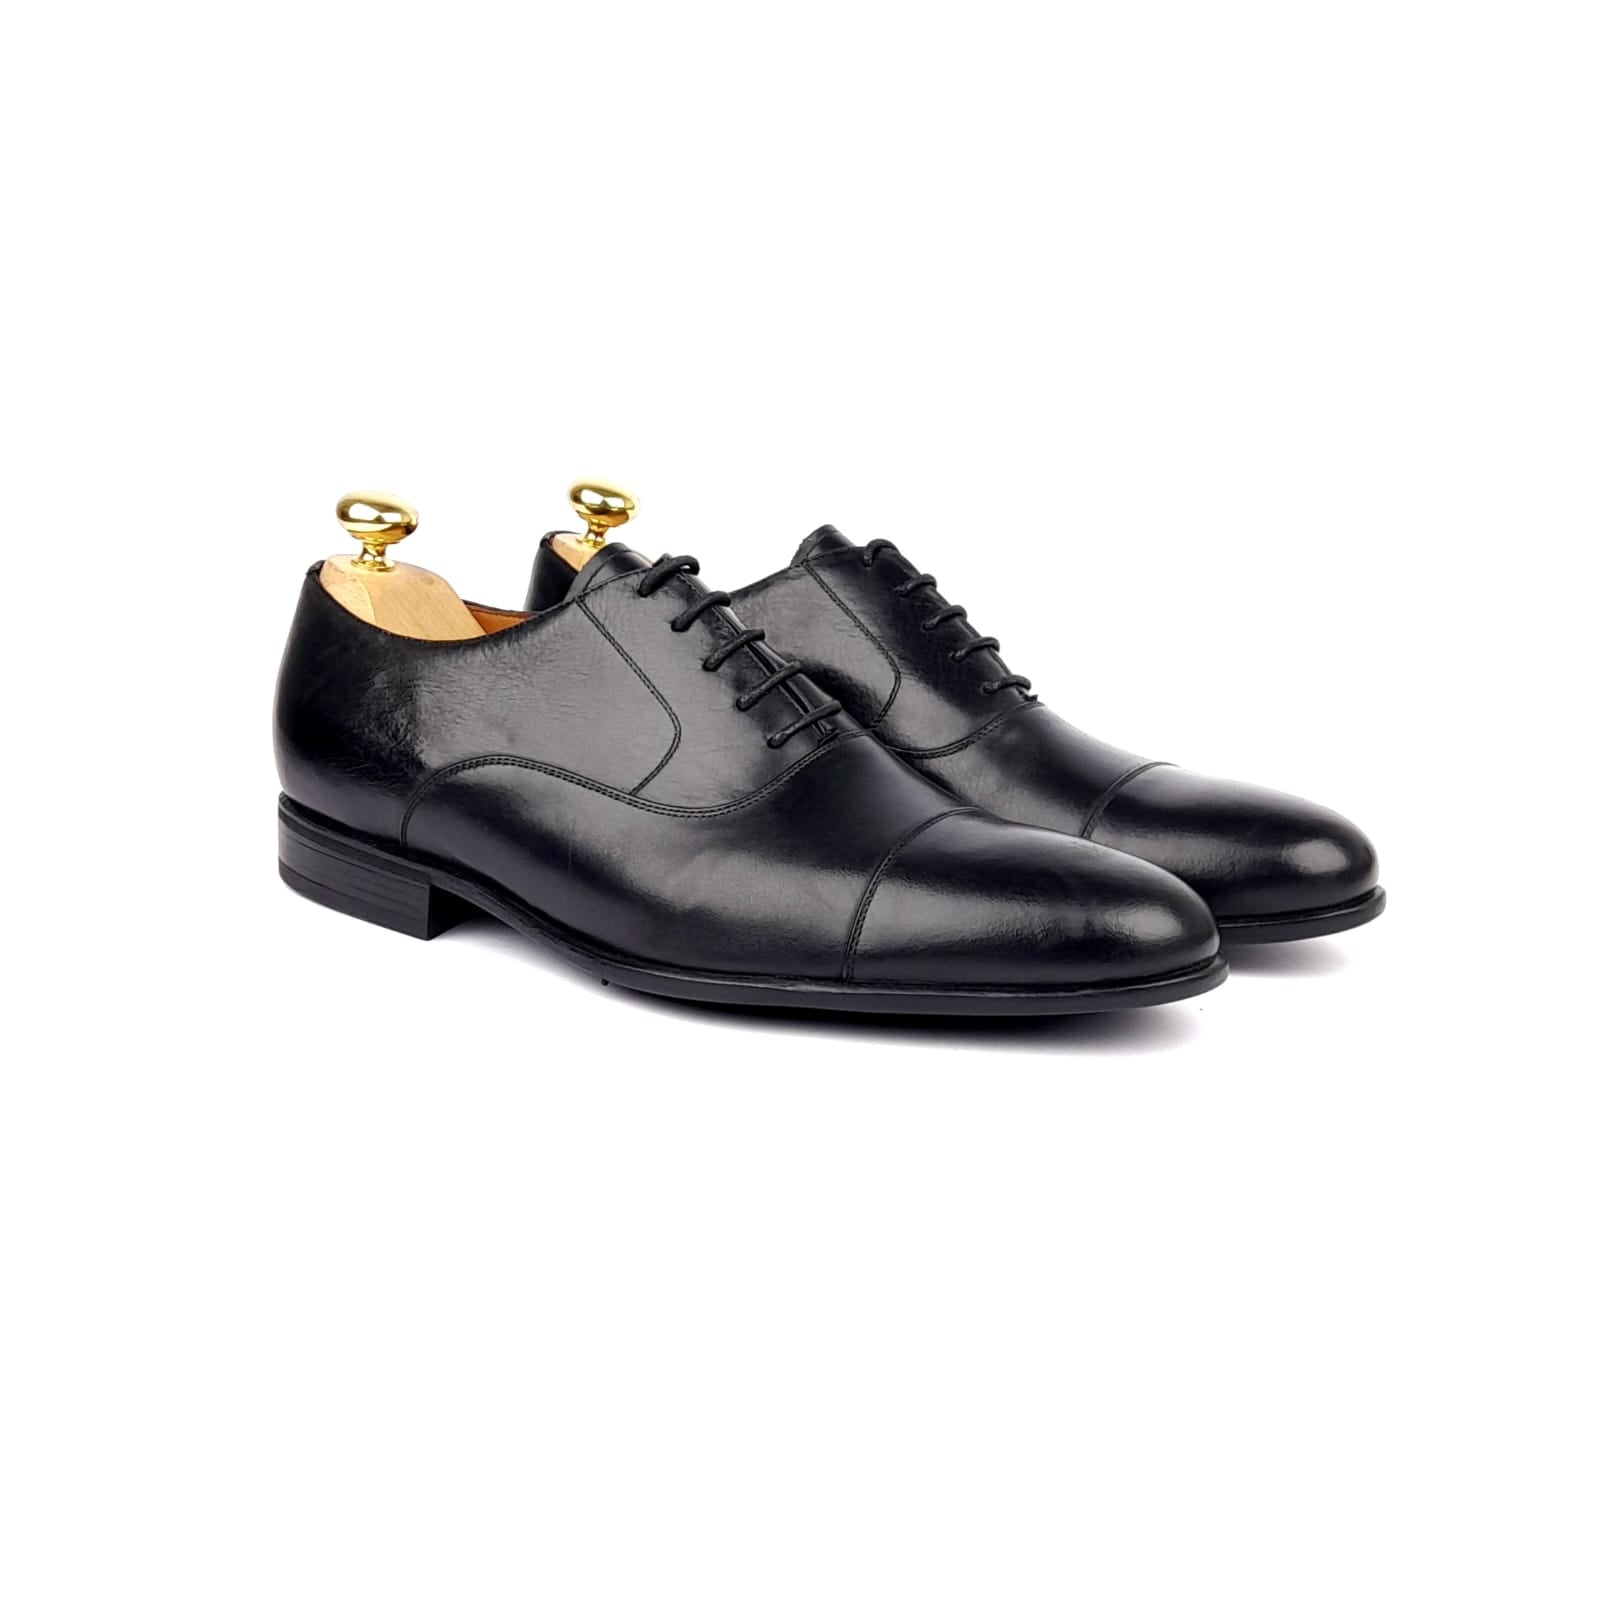 0100 Chaussure cuir Noir